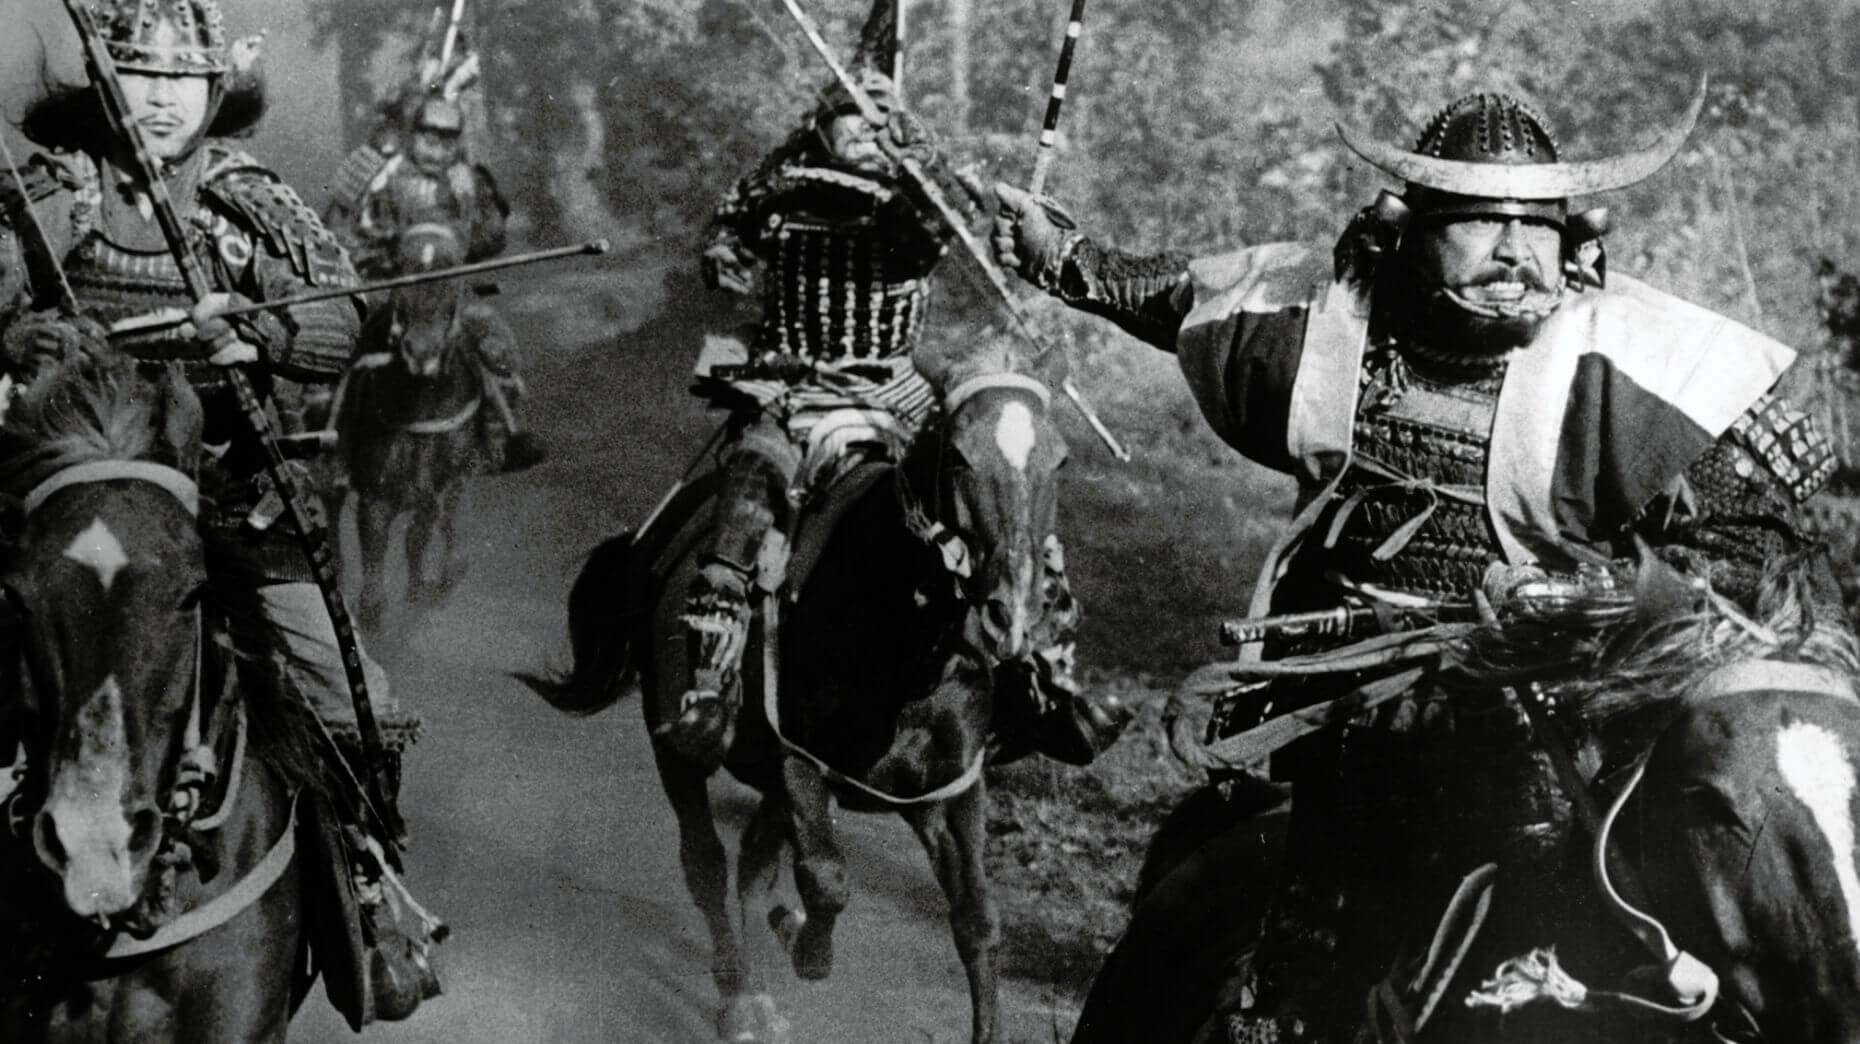 جنگجویان سامورایی سوار اسب در فیلم سریر خون